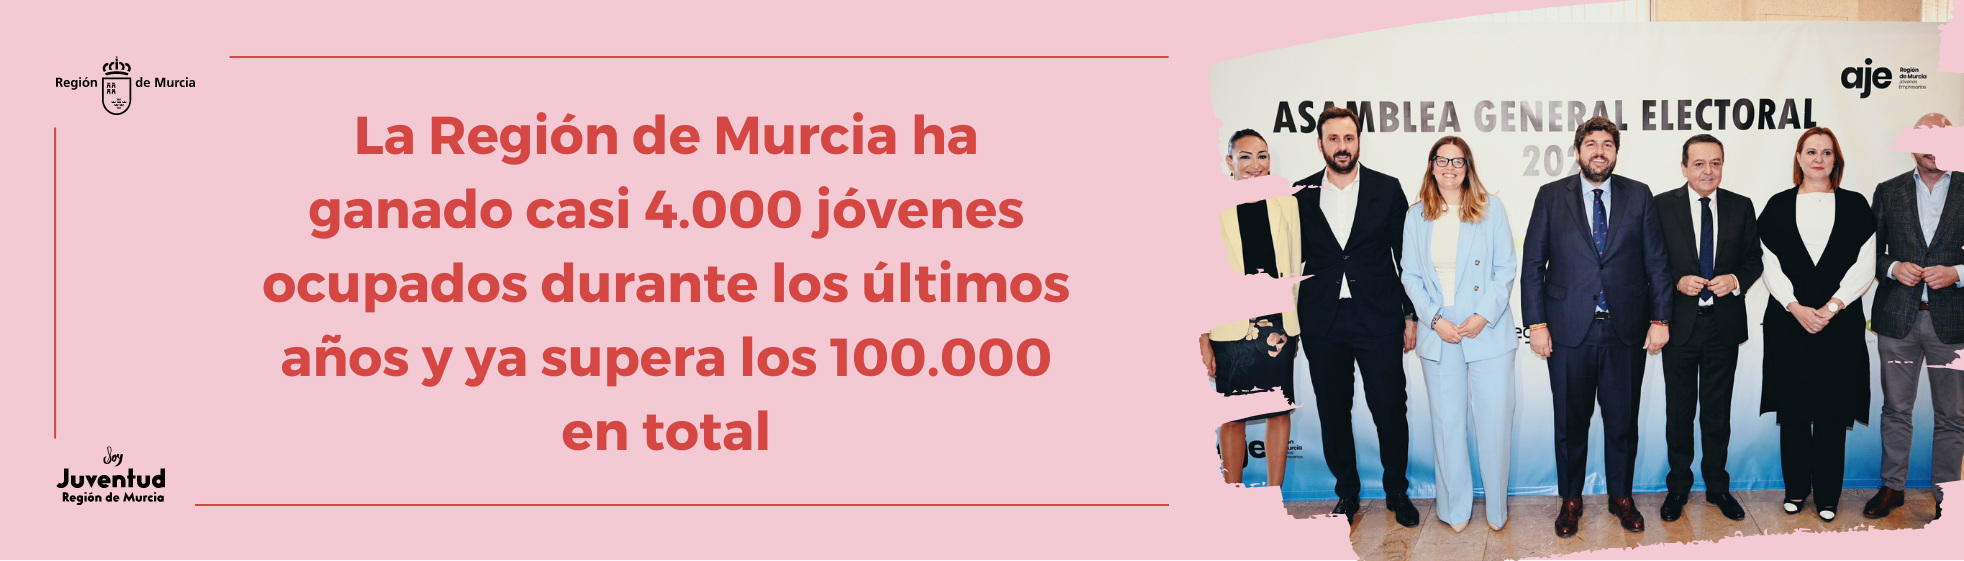 La Región de Murcia ha ganado casi 4.000 jóvenes ocupados durante los últimos años y ya supera los 100.000 en total